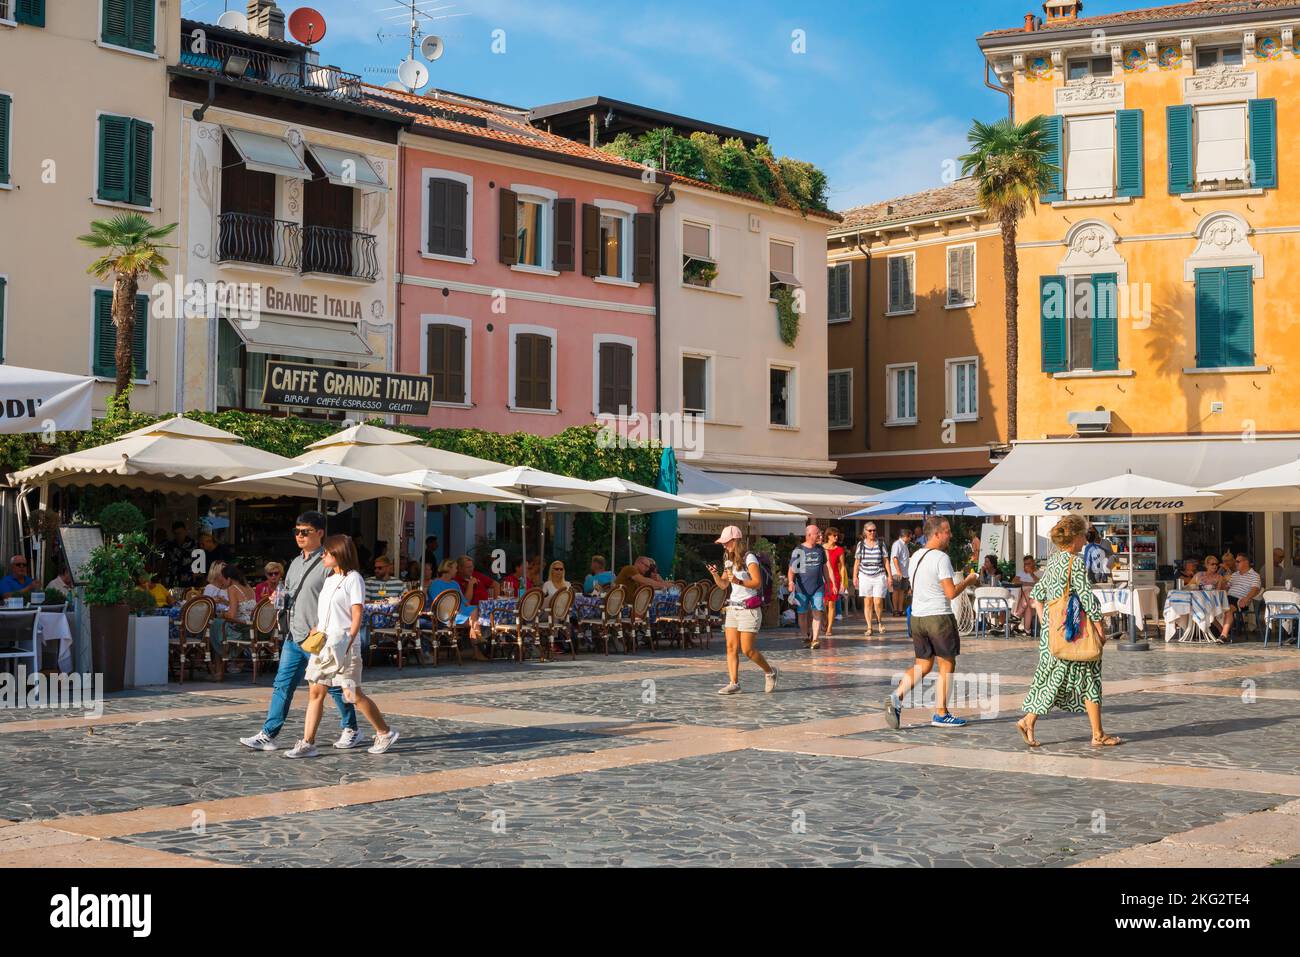 Sirmione Stadt Italien, Blick im Sommer auf die Piazza Carducci in der malerischen Gardasee Ferienort Sirmione, Lombardei, Italien Stockfoto